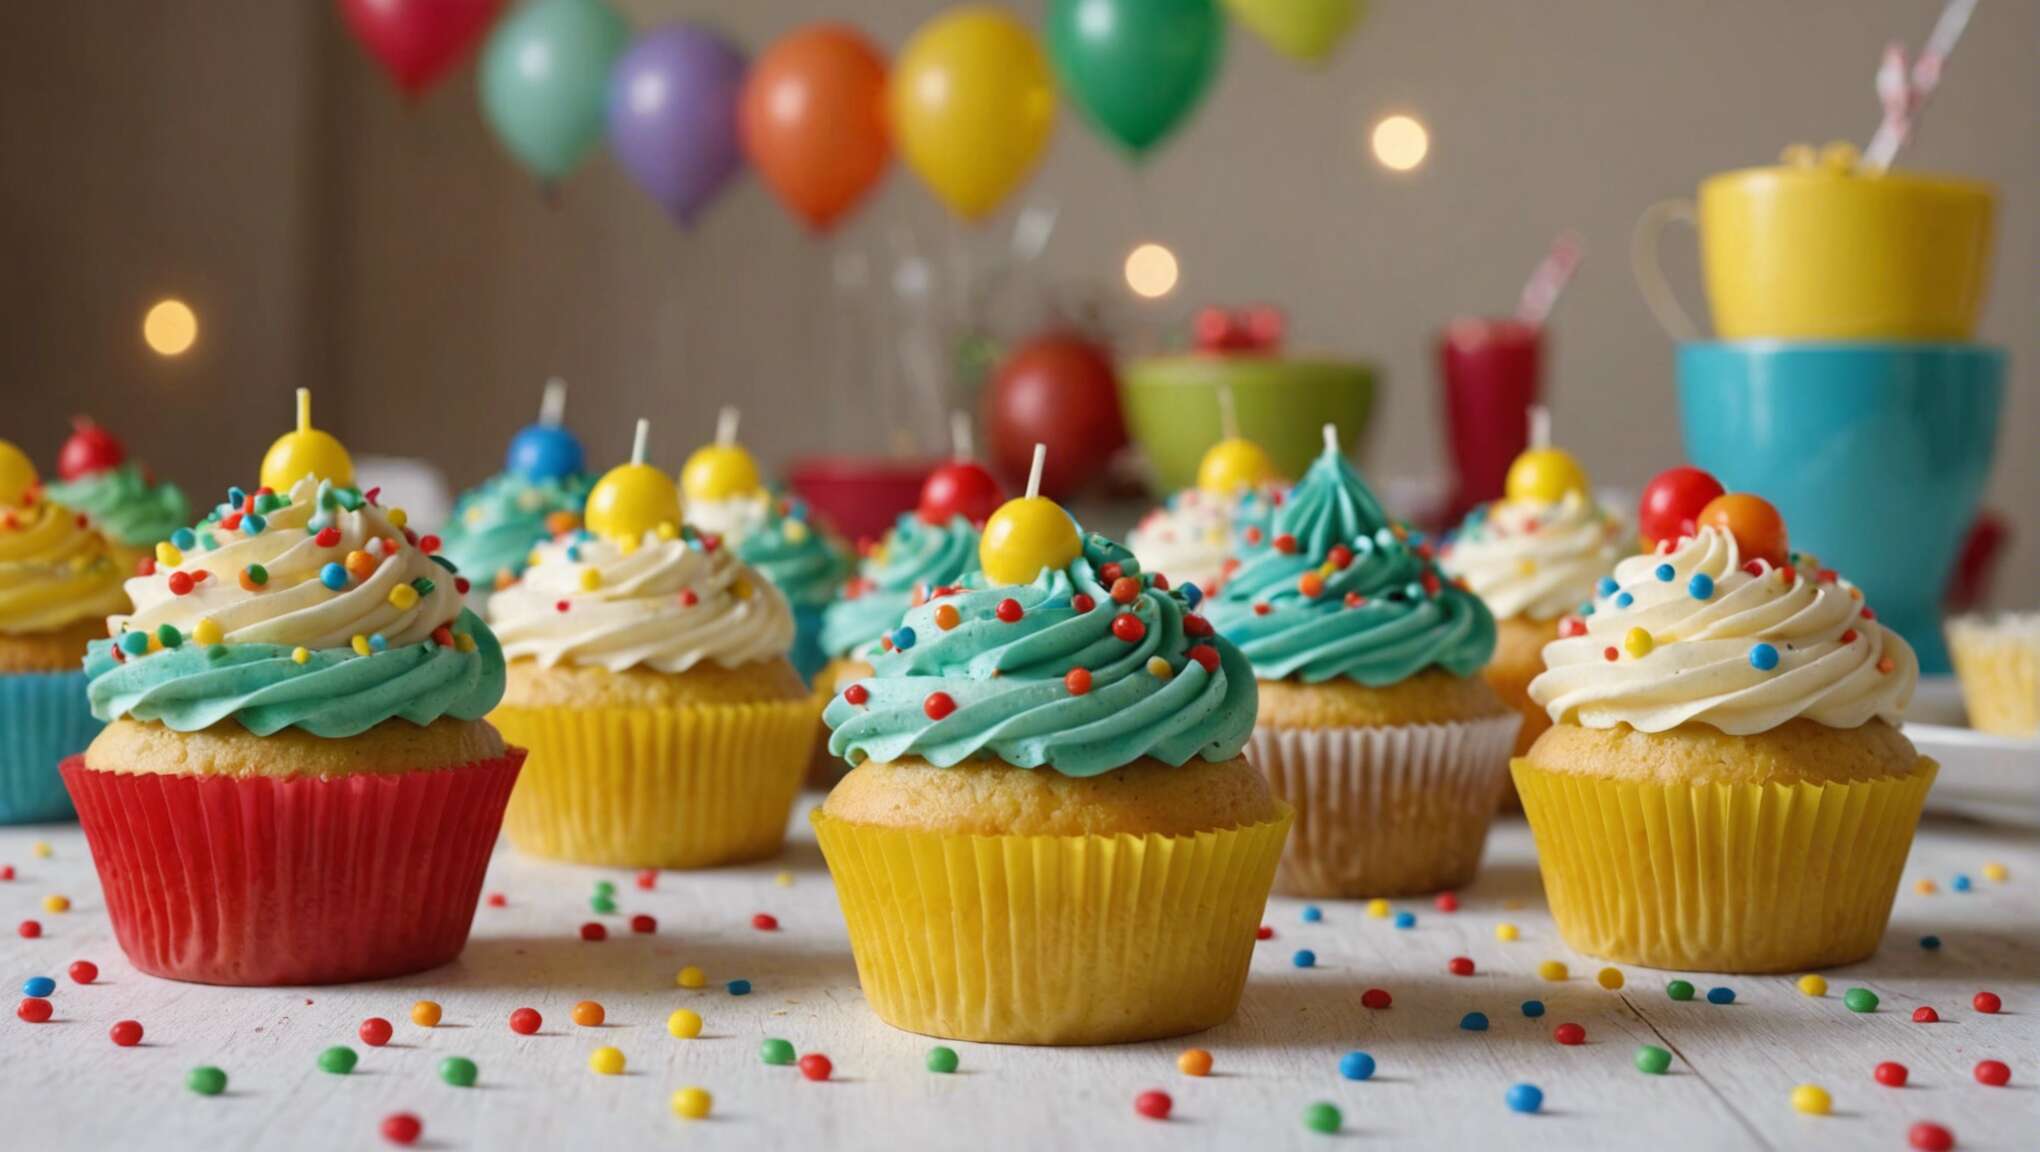 Cupcakes décorés rapidement l’atelier anniversaire amusant délicieux